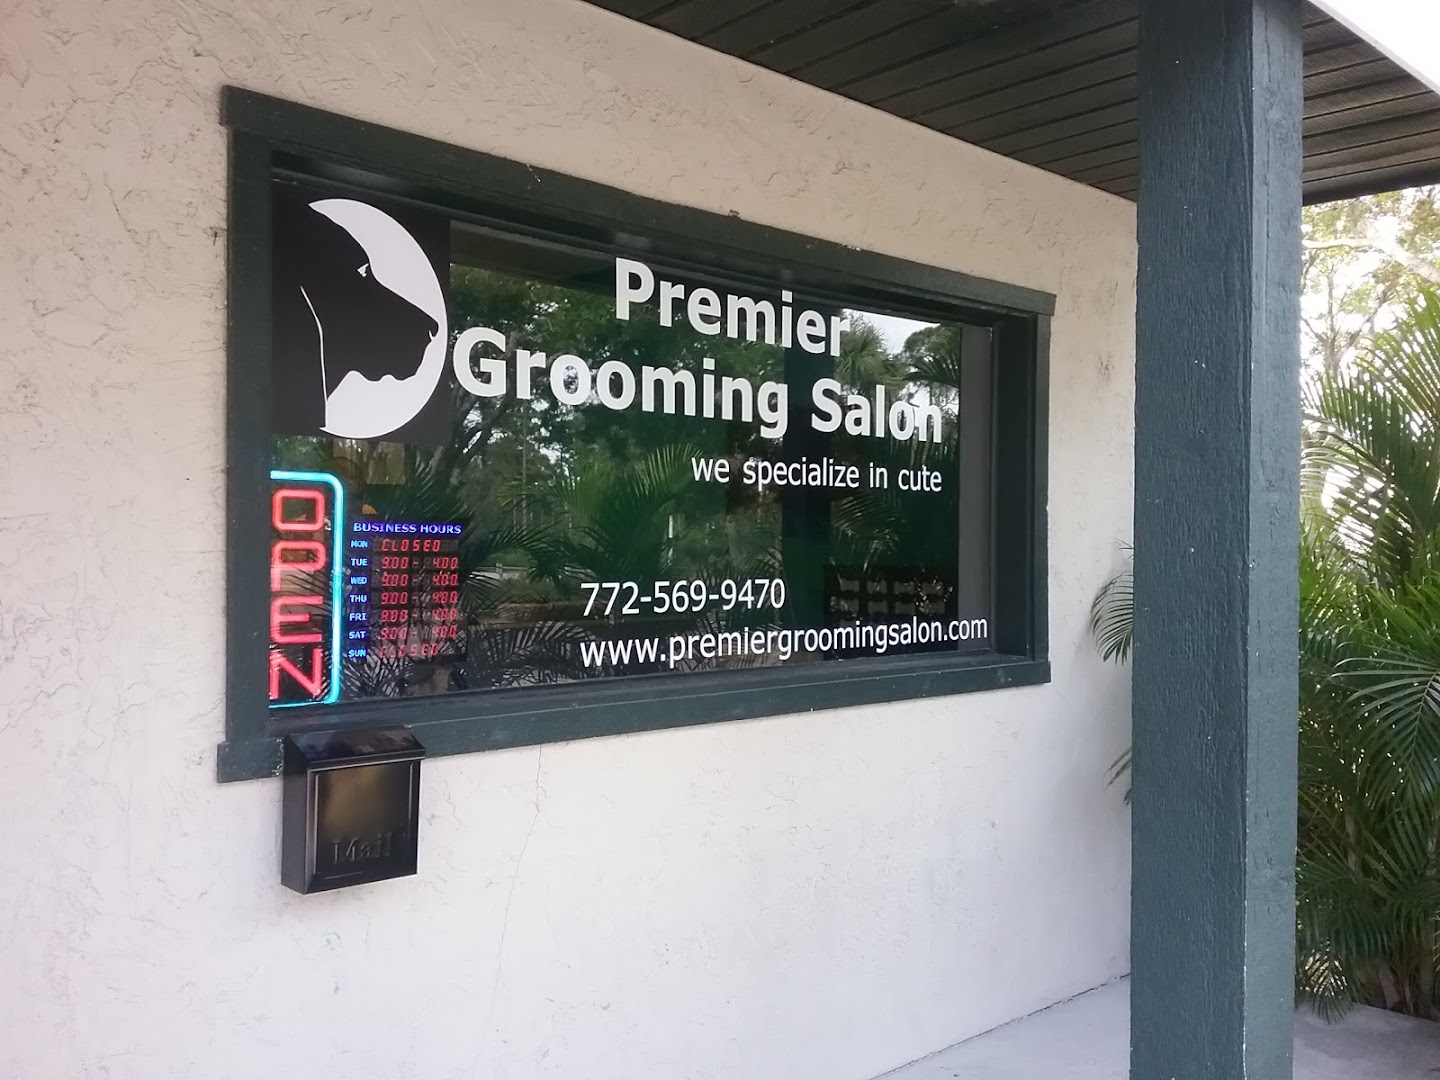 Premier Grooming Salon